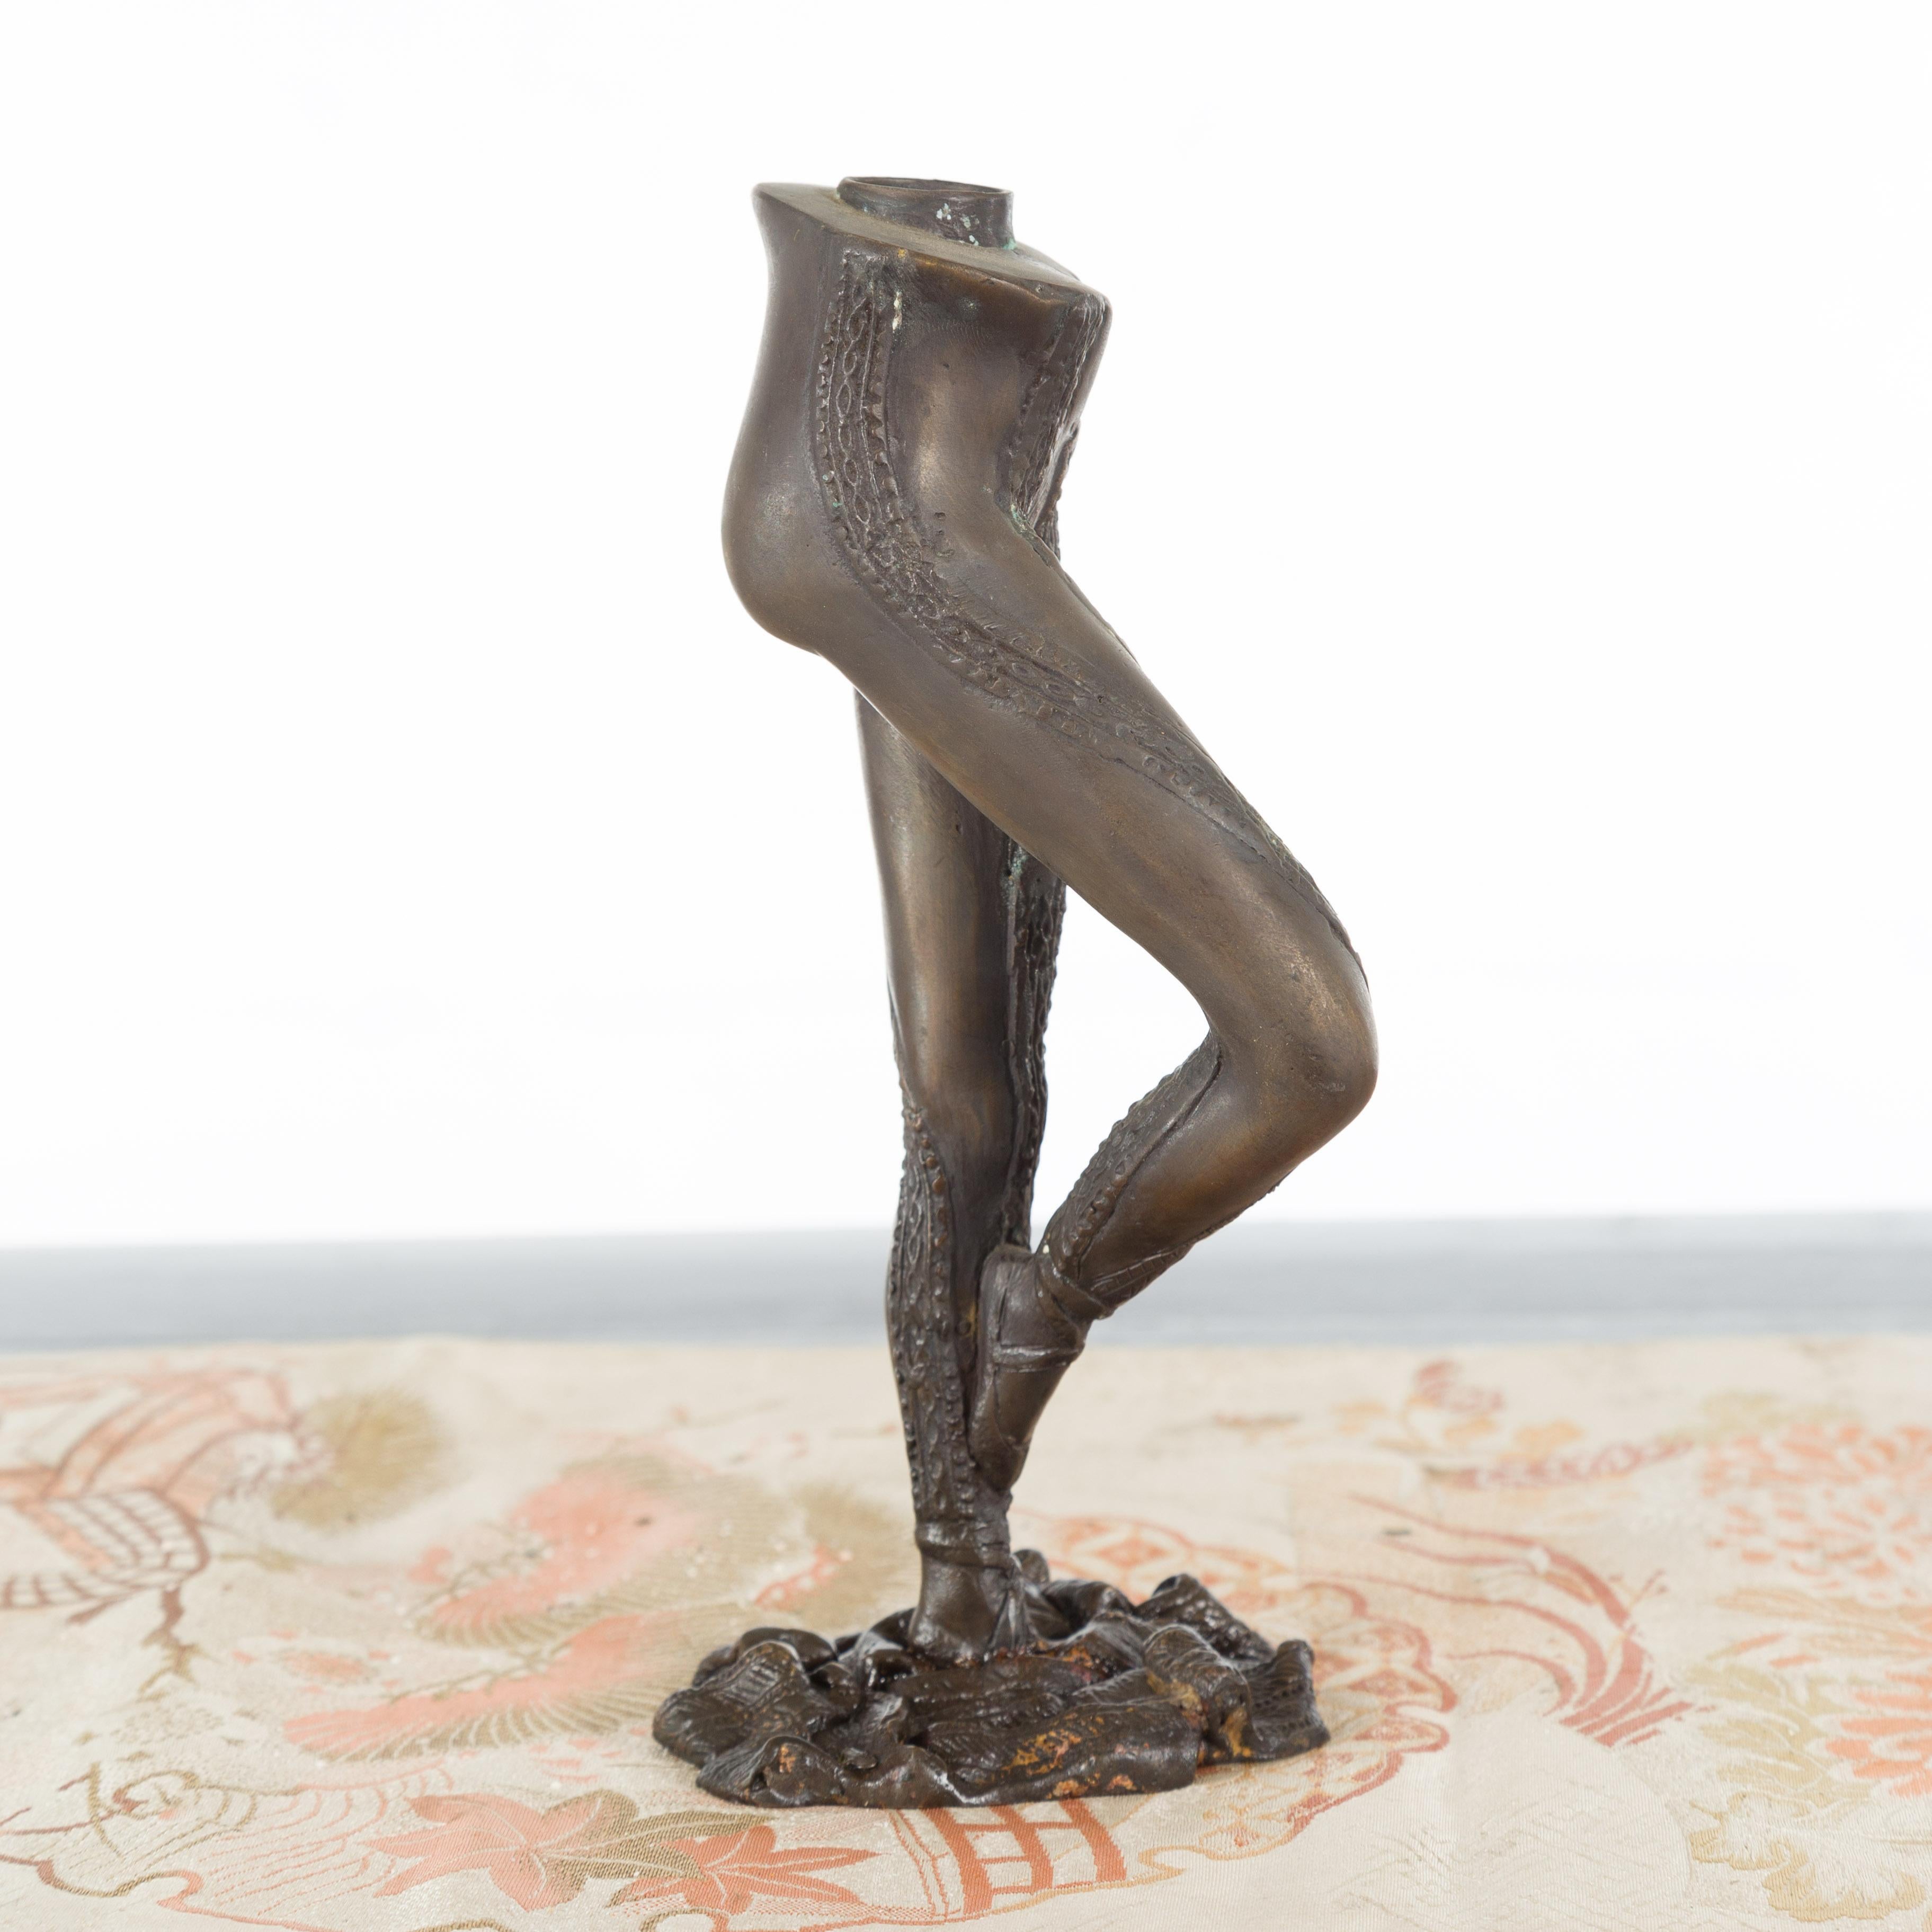 Kerzenhalter mit Ballerina-Beinen aus Bronzeguss aus der Mitte des 20. Jahrhunderts, in Frappé-Stellung. Wir haben derzeit mehrere zur Verfügung, preislich und verkauft einzeln $ 250 pro Stück. Dieser Kerzenhalter aus Bronze wurde mit der